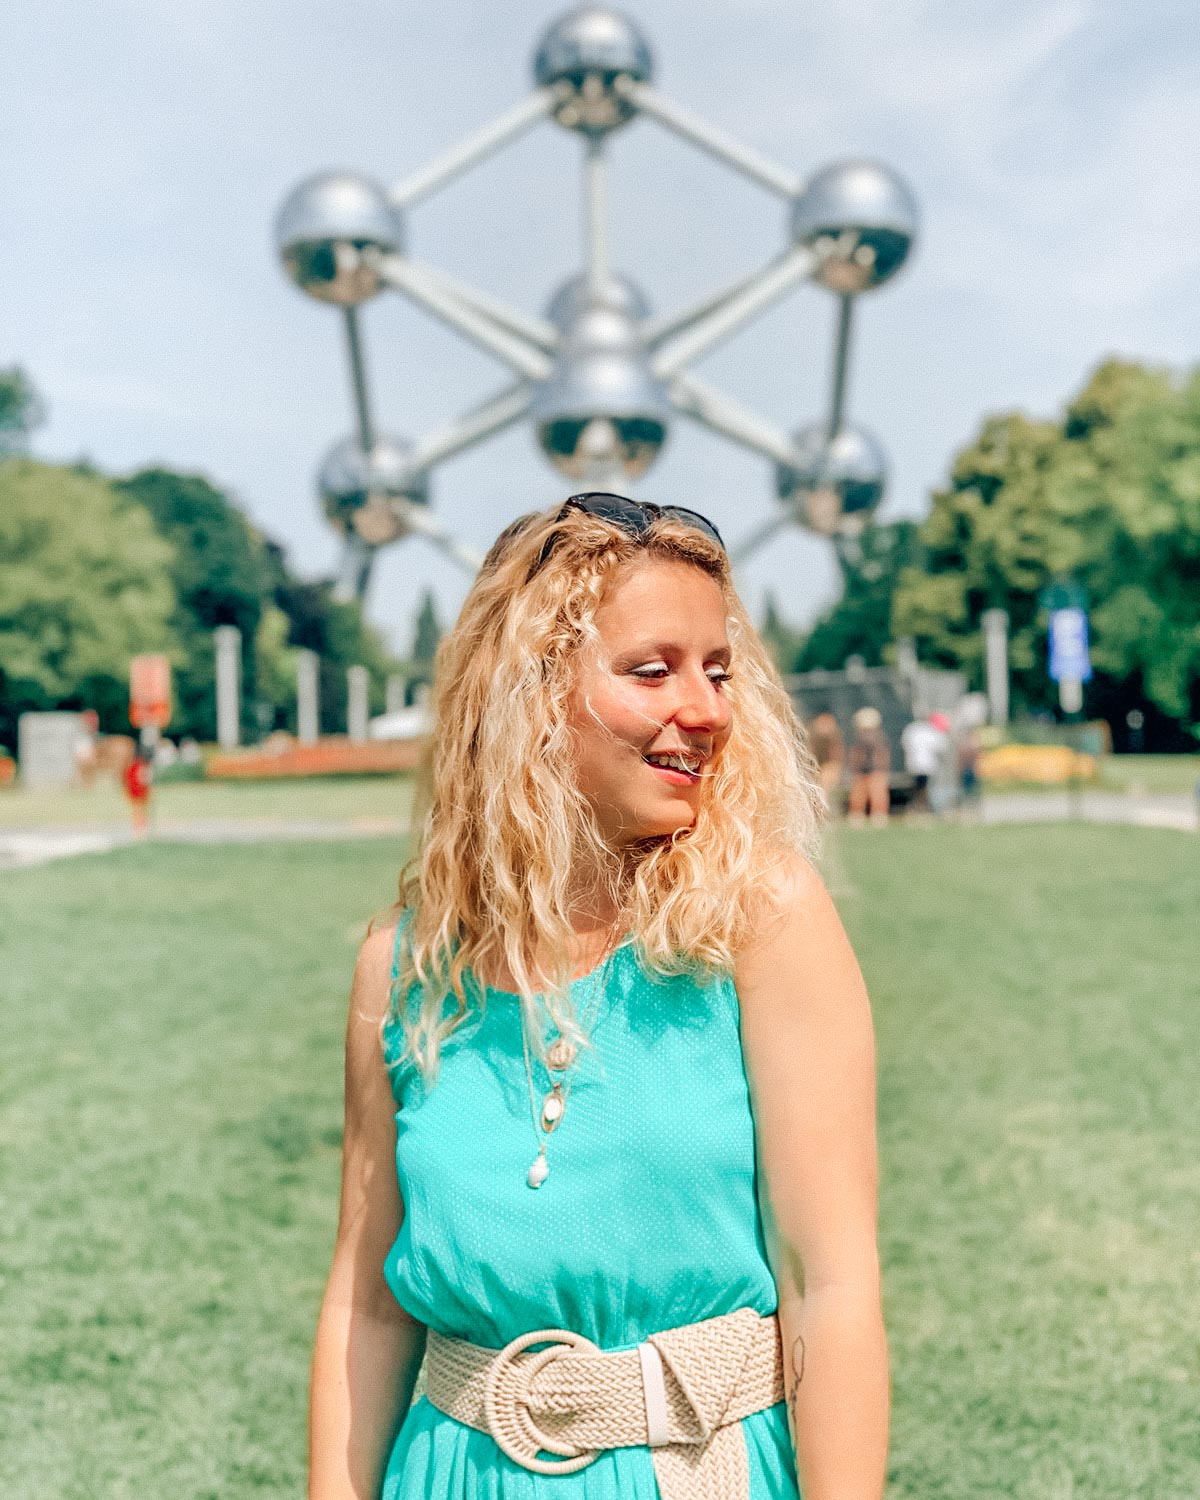 Visit the Atomium in Brussels